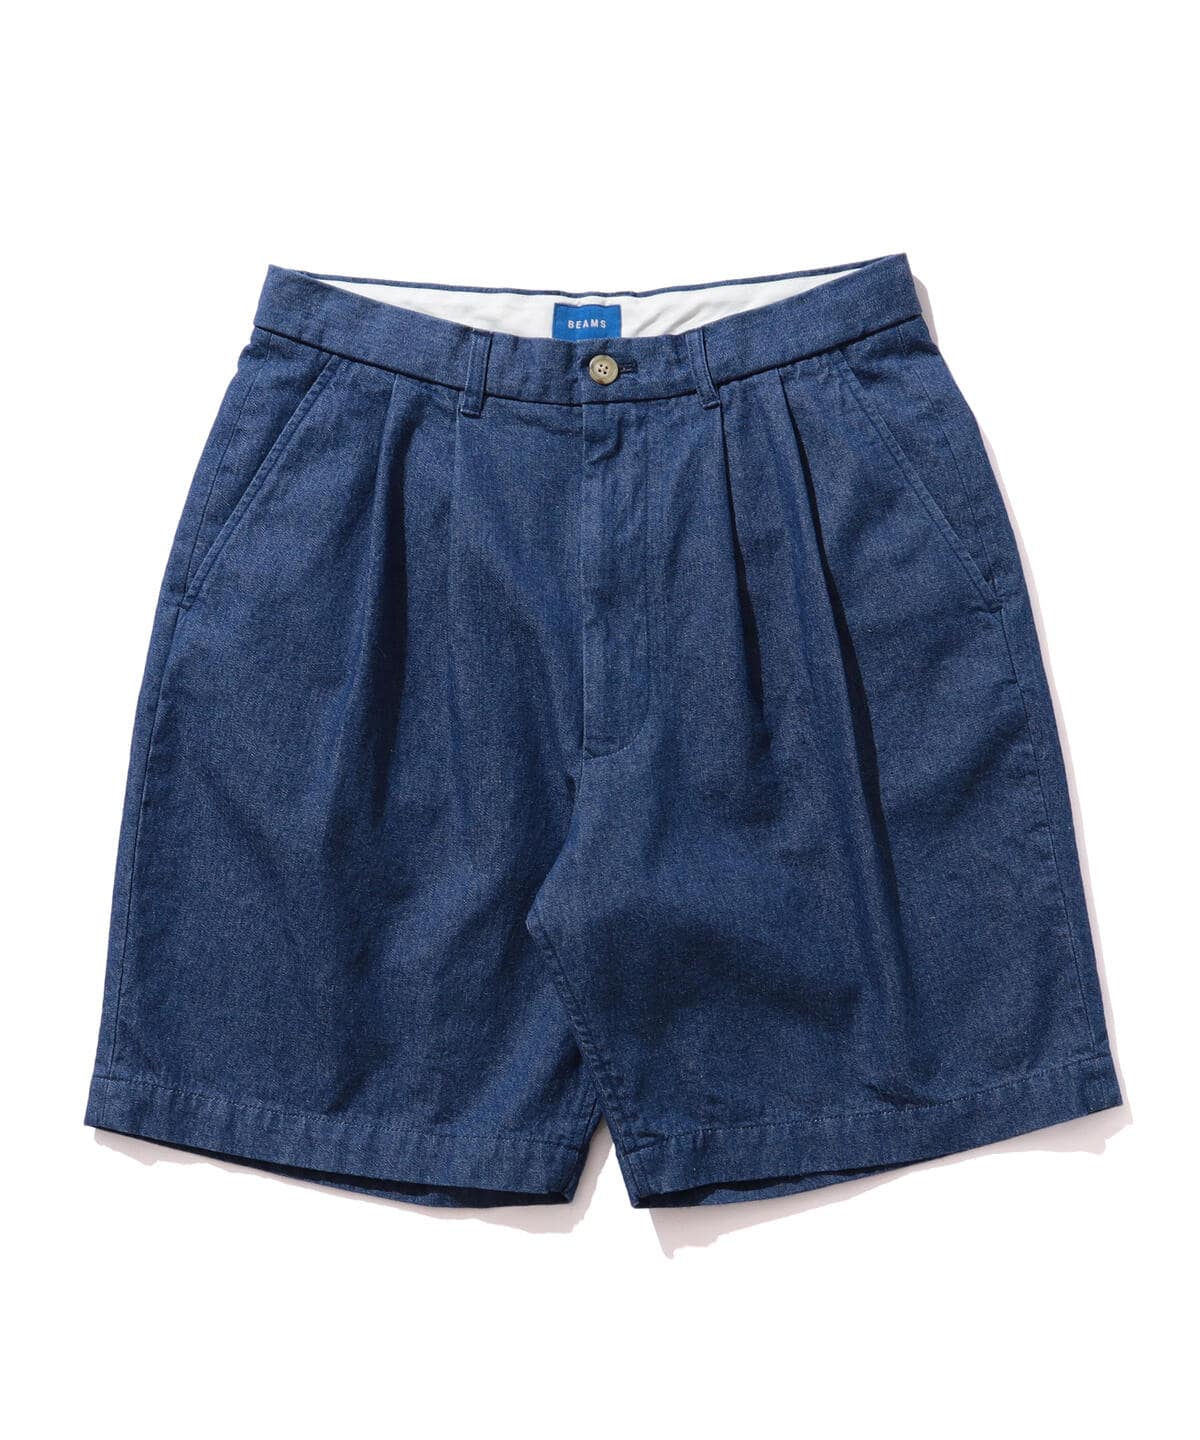 BEAMS [BEAMS] BEAMS / Denim 2 pleat shorts (pants shorts) mail 